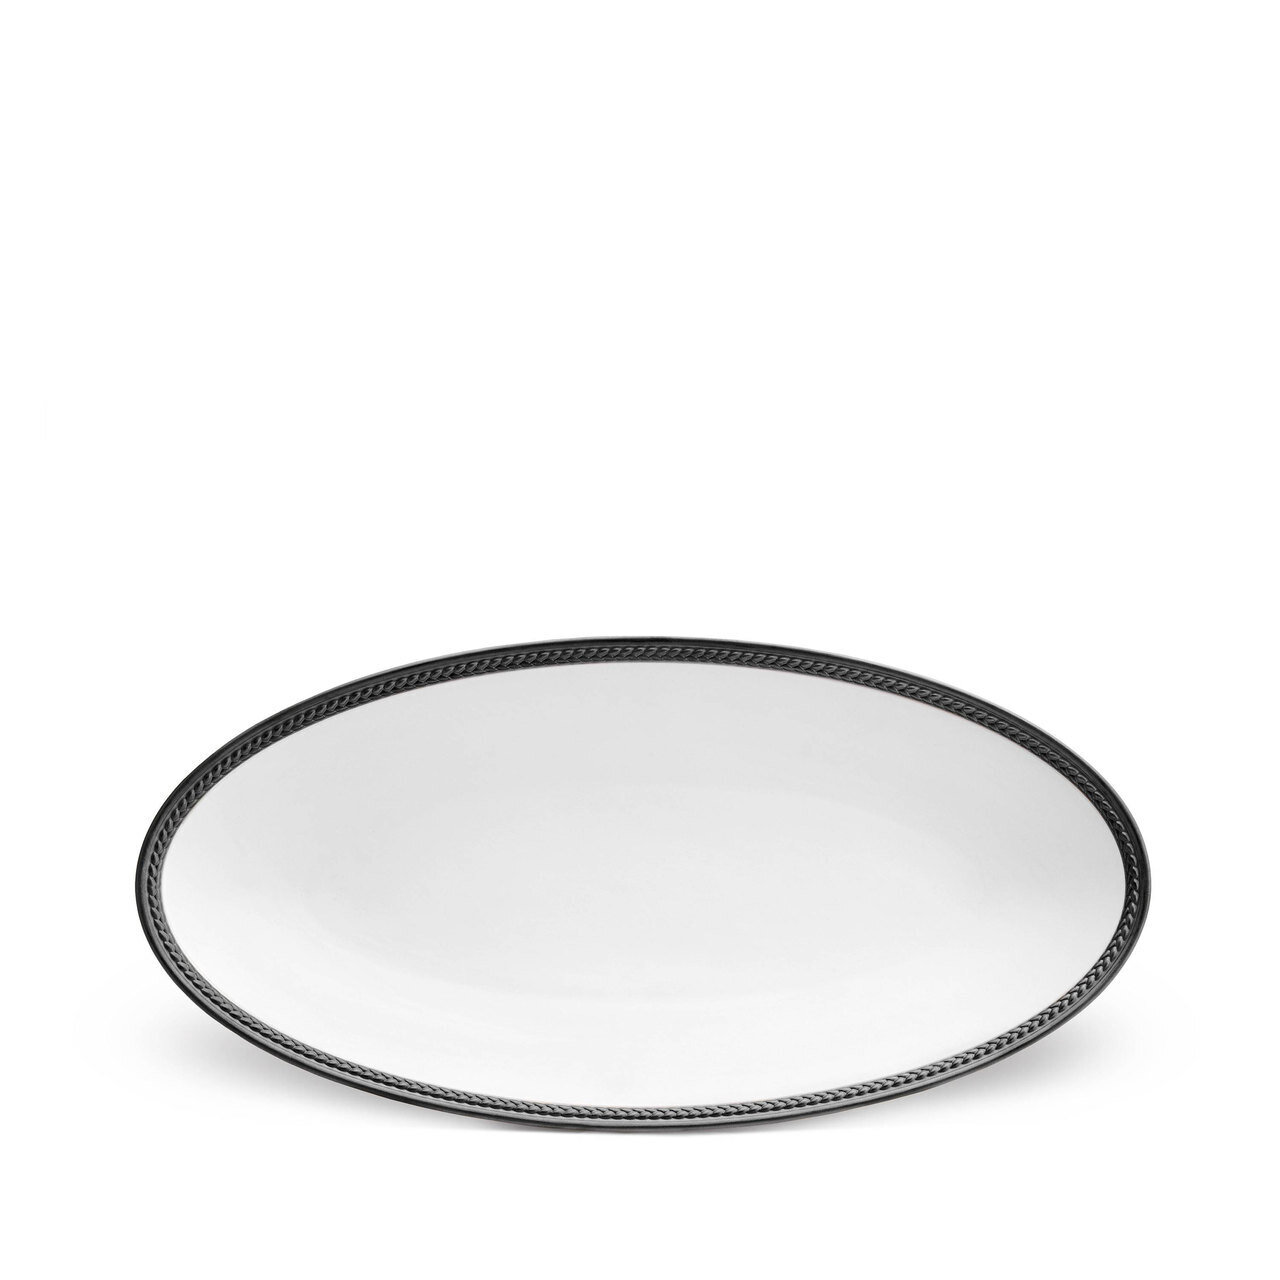 L'Objet Soie Tressee Black Small Oval Platter ST565